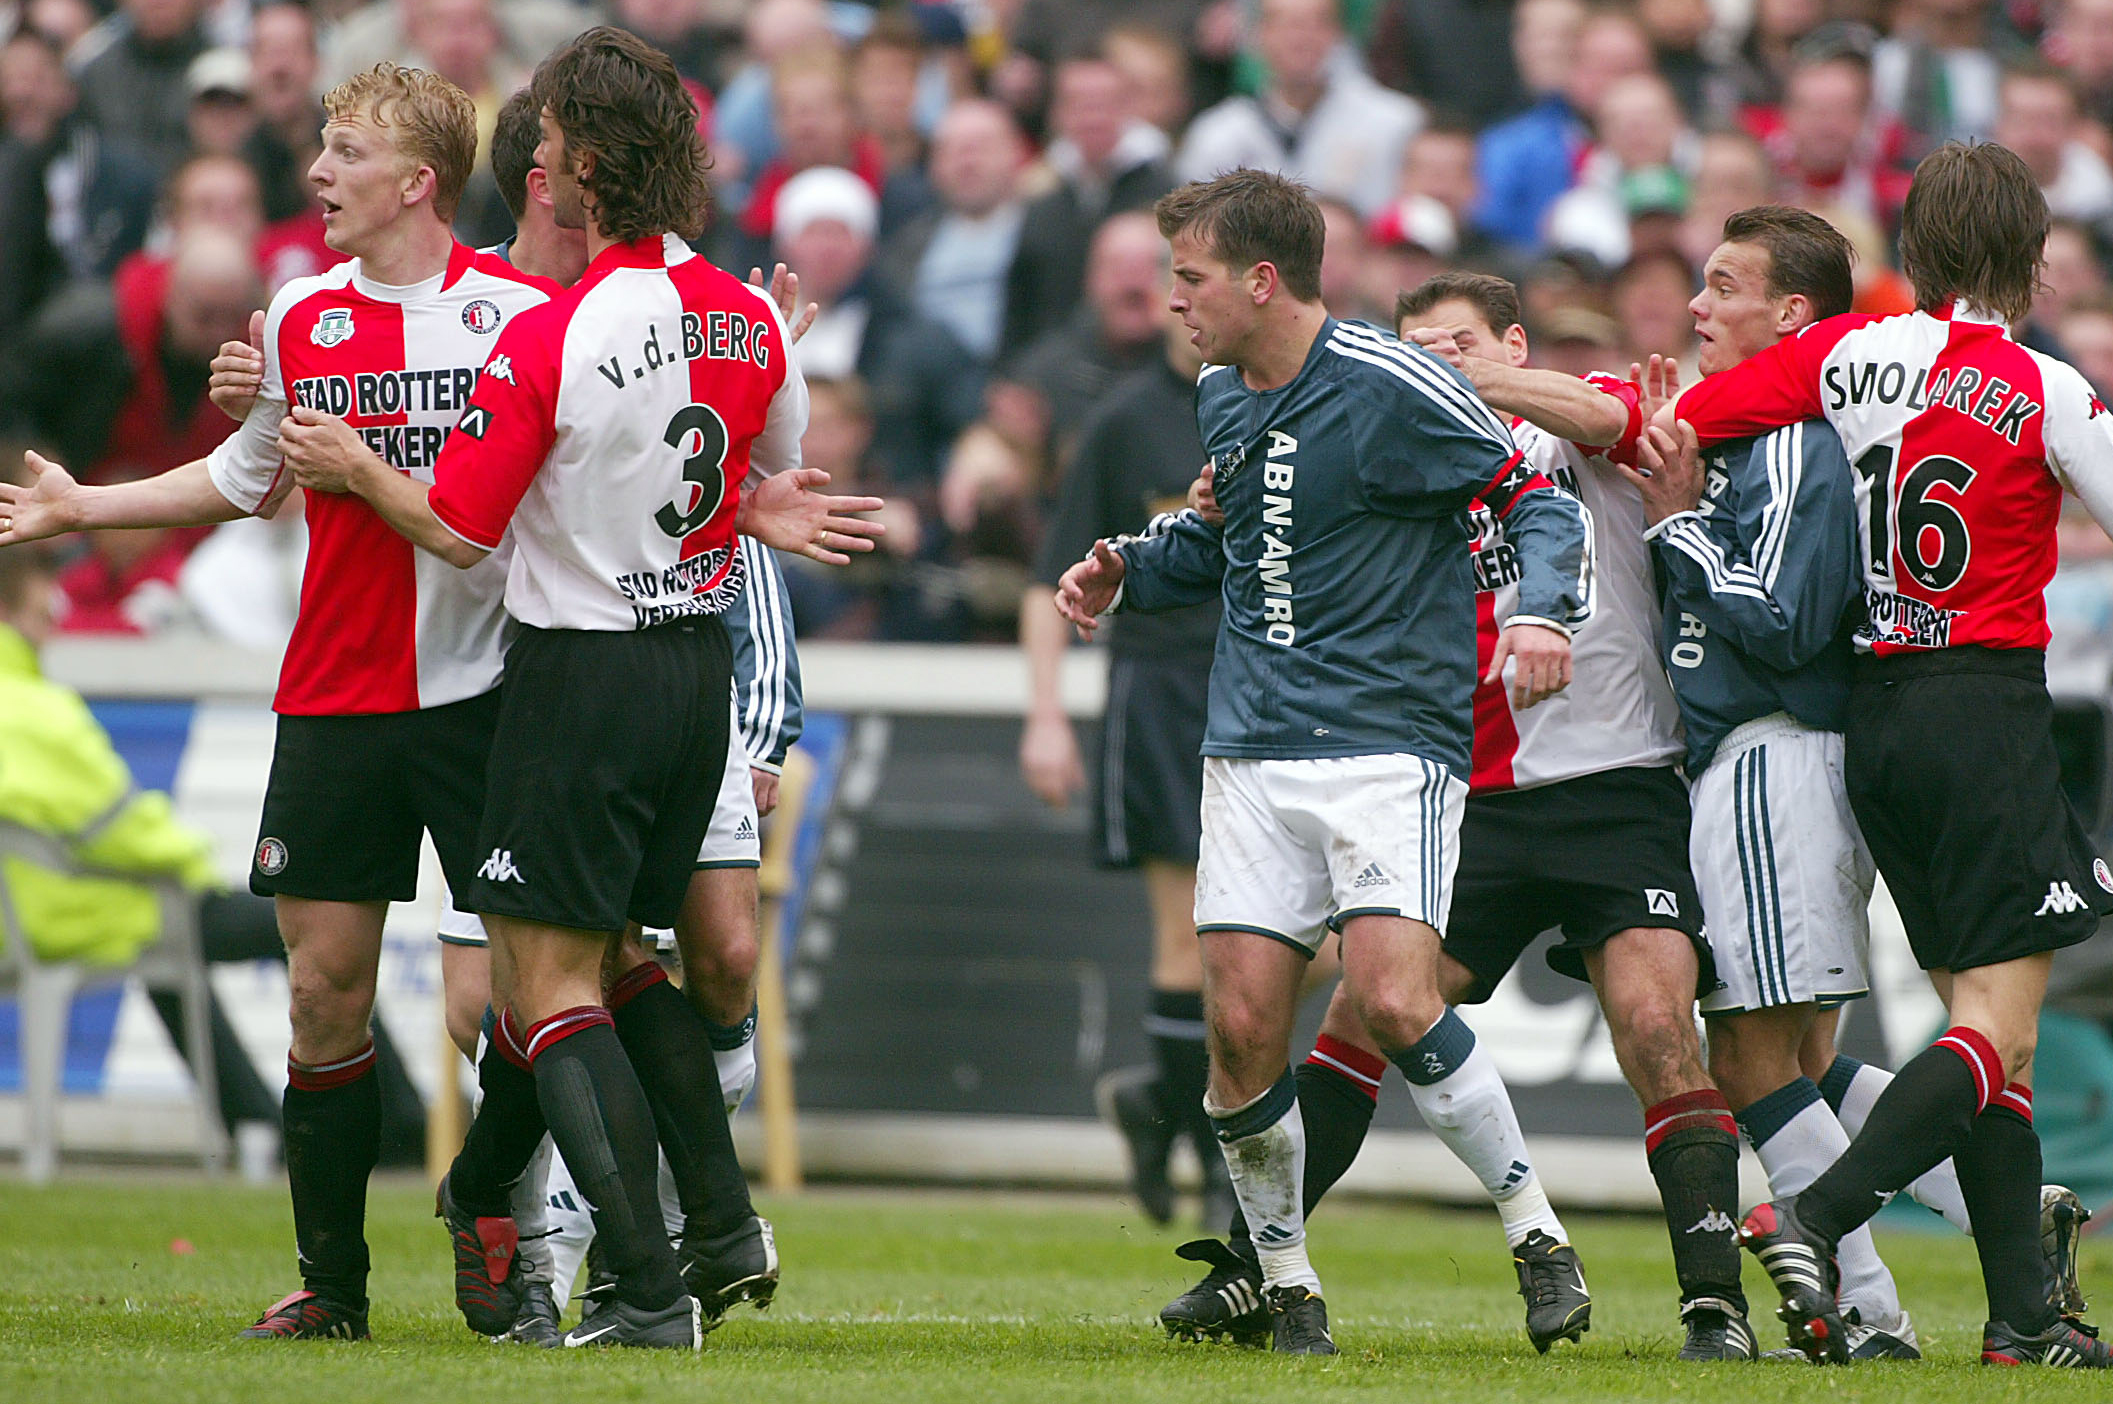 In de altijd beladen Klassieker tegen de aartsrivaal laat Kuijt zich geregeld gelden. Hier is hij in de thuiswedstrijd van het seizoen 2003/04 de aanleiding voor een opstootje met Ajacieden Wesley Sneijder en Rafael van der Vaart, die even daarvoor het slachtoffer is geworden van een tackle van de Katwijker.